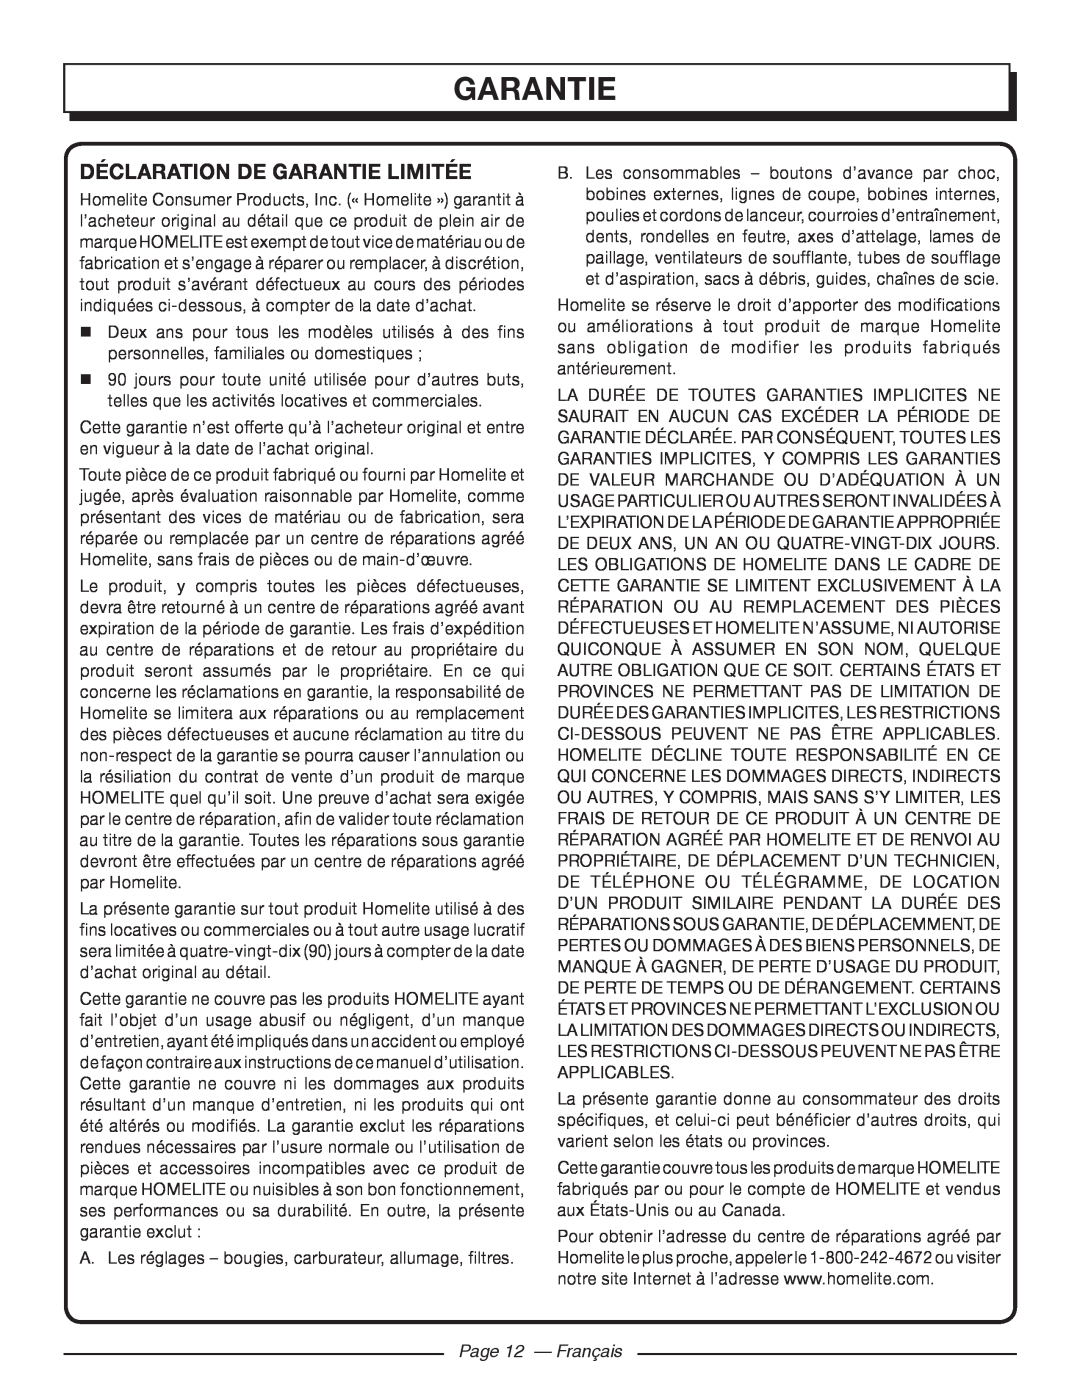 Homelite UT41112 manuel dutilisation Déclaration De Garantie Limitée, Page 12 - Français 